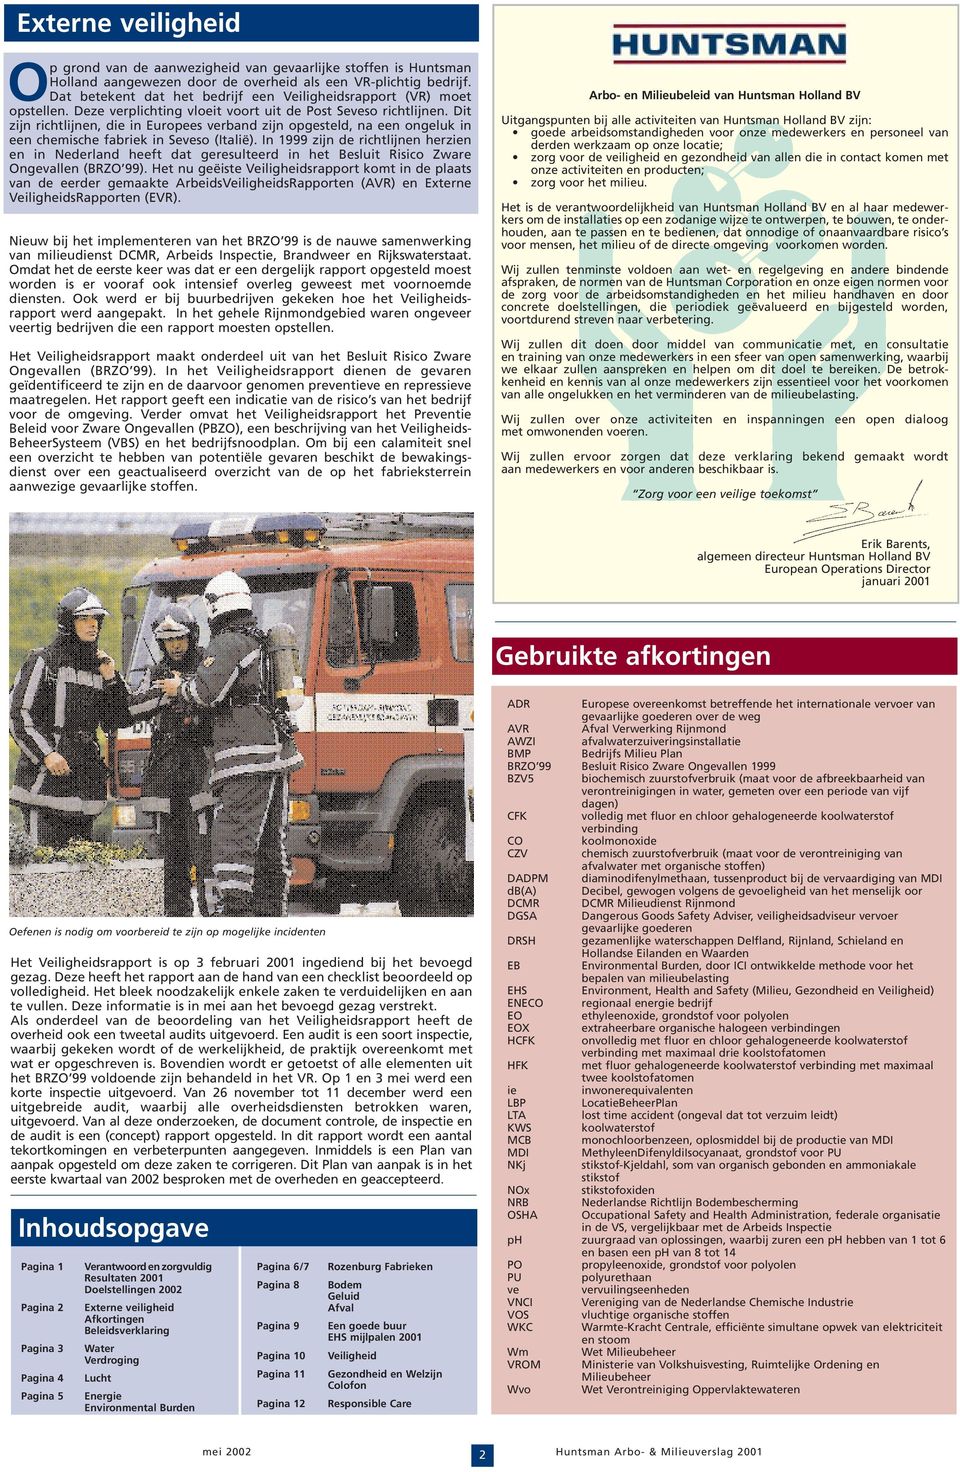 Dit zijn richtlijnen, die in Europees verband zijn opgesteld, na een ongeluk in een chemische fabriek in Seveso (Italië).